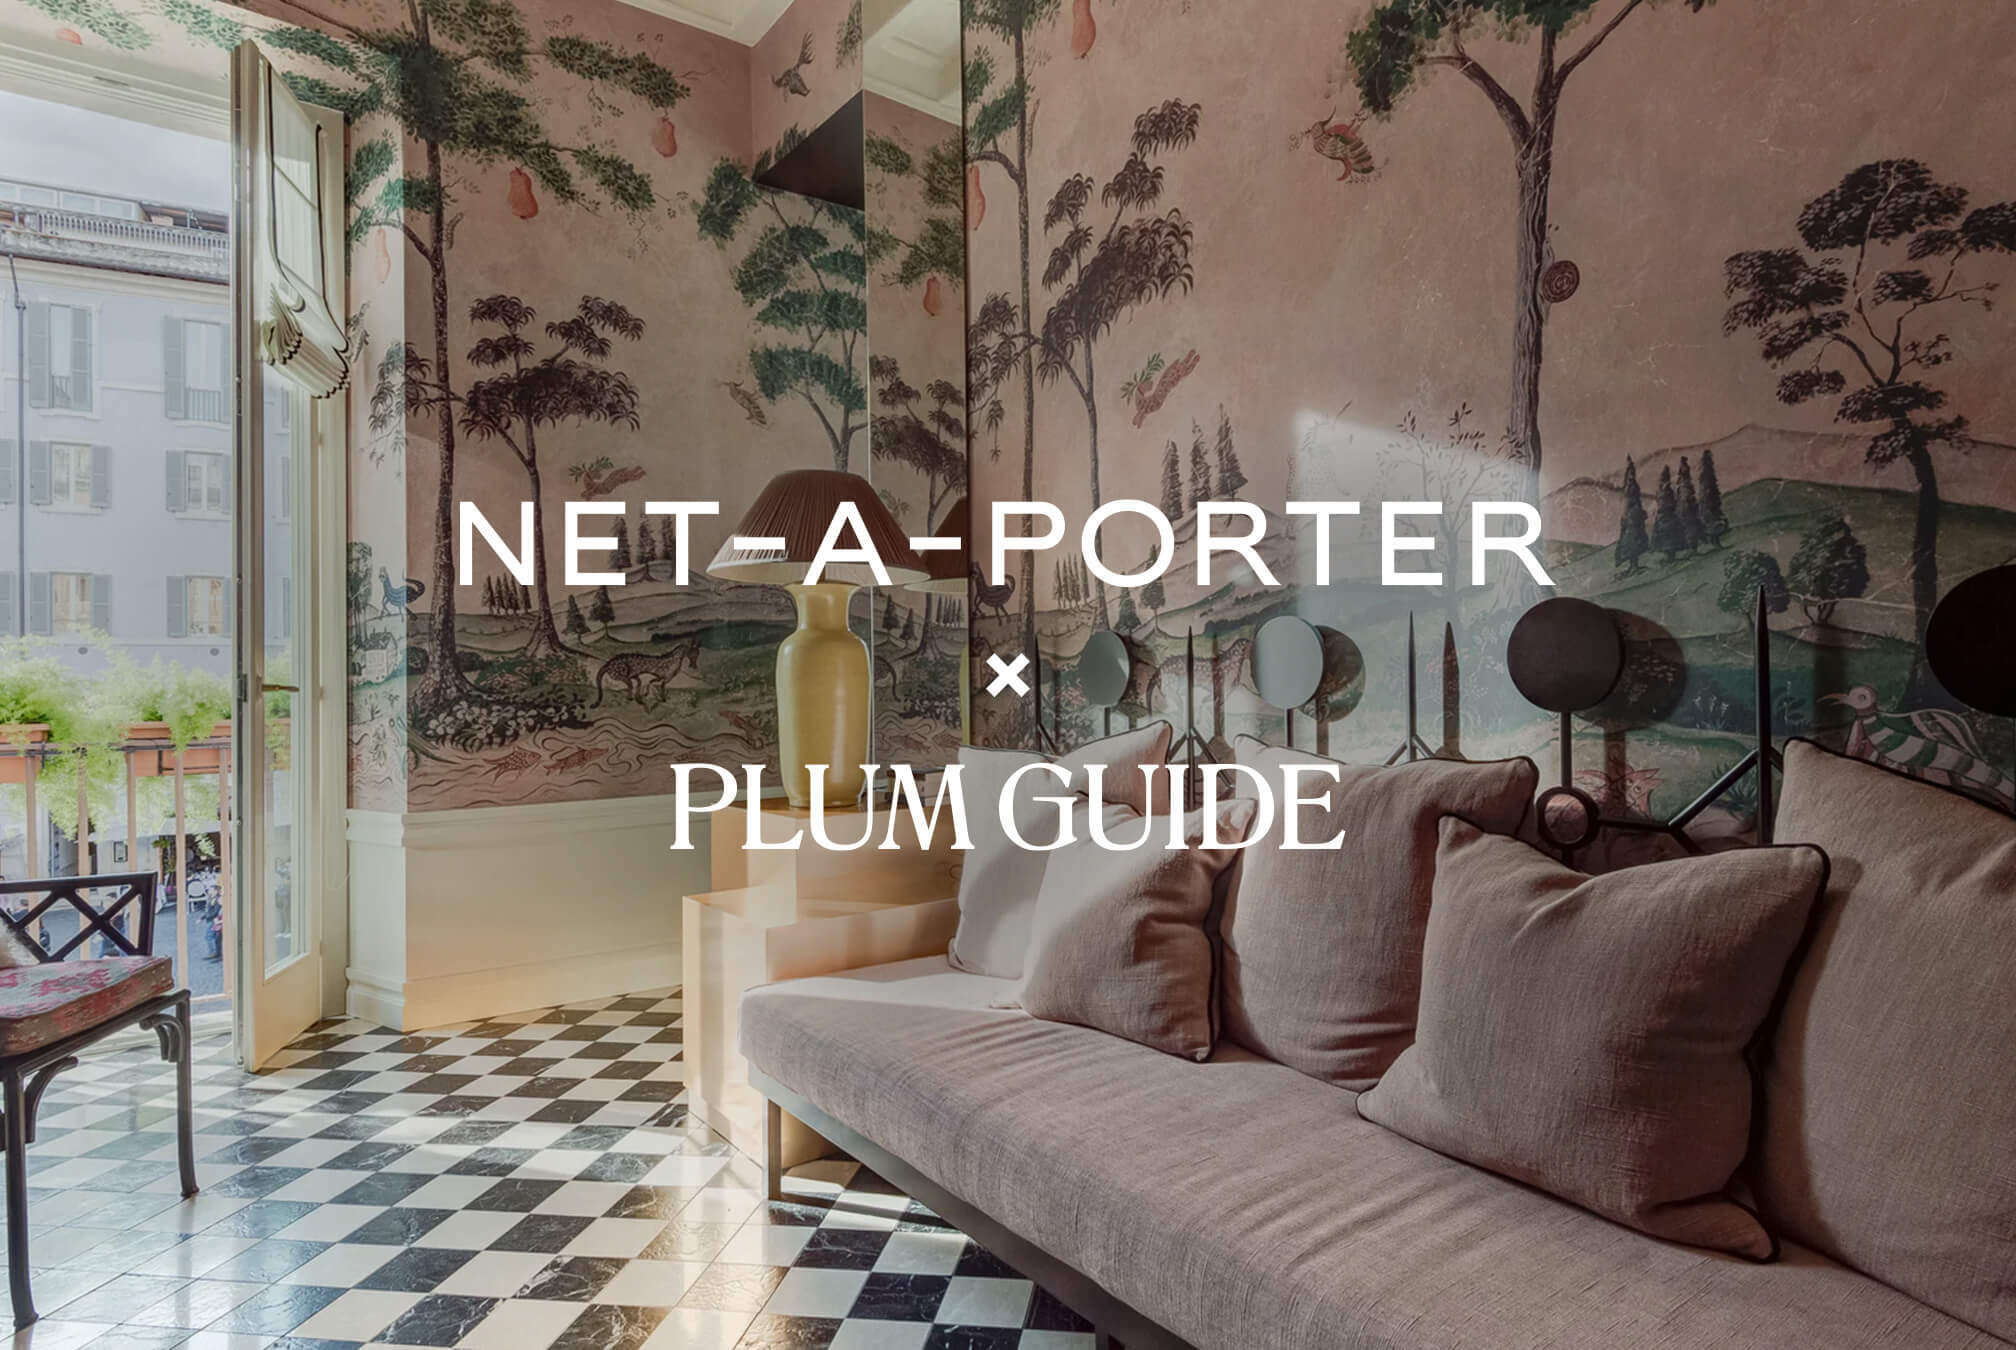 Net-A-Porter x Plum Guide